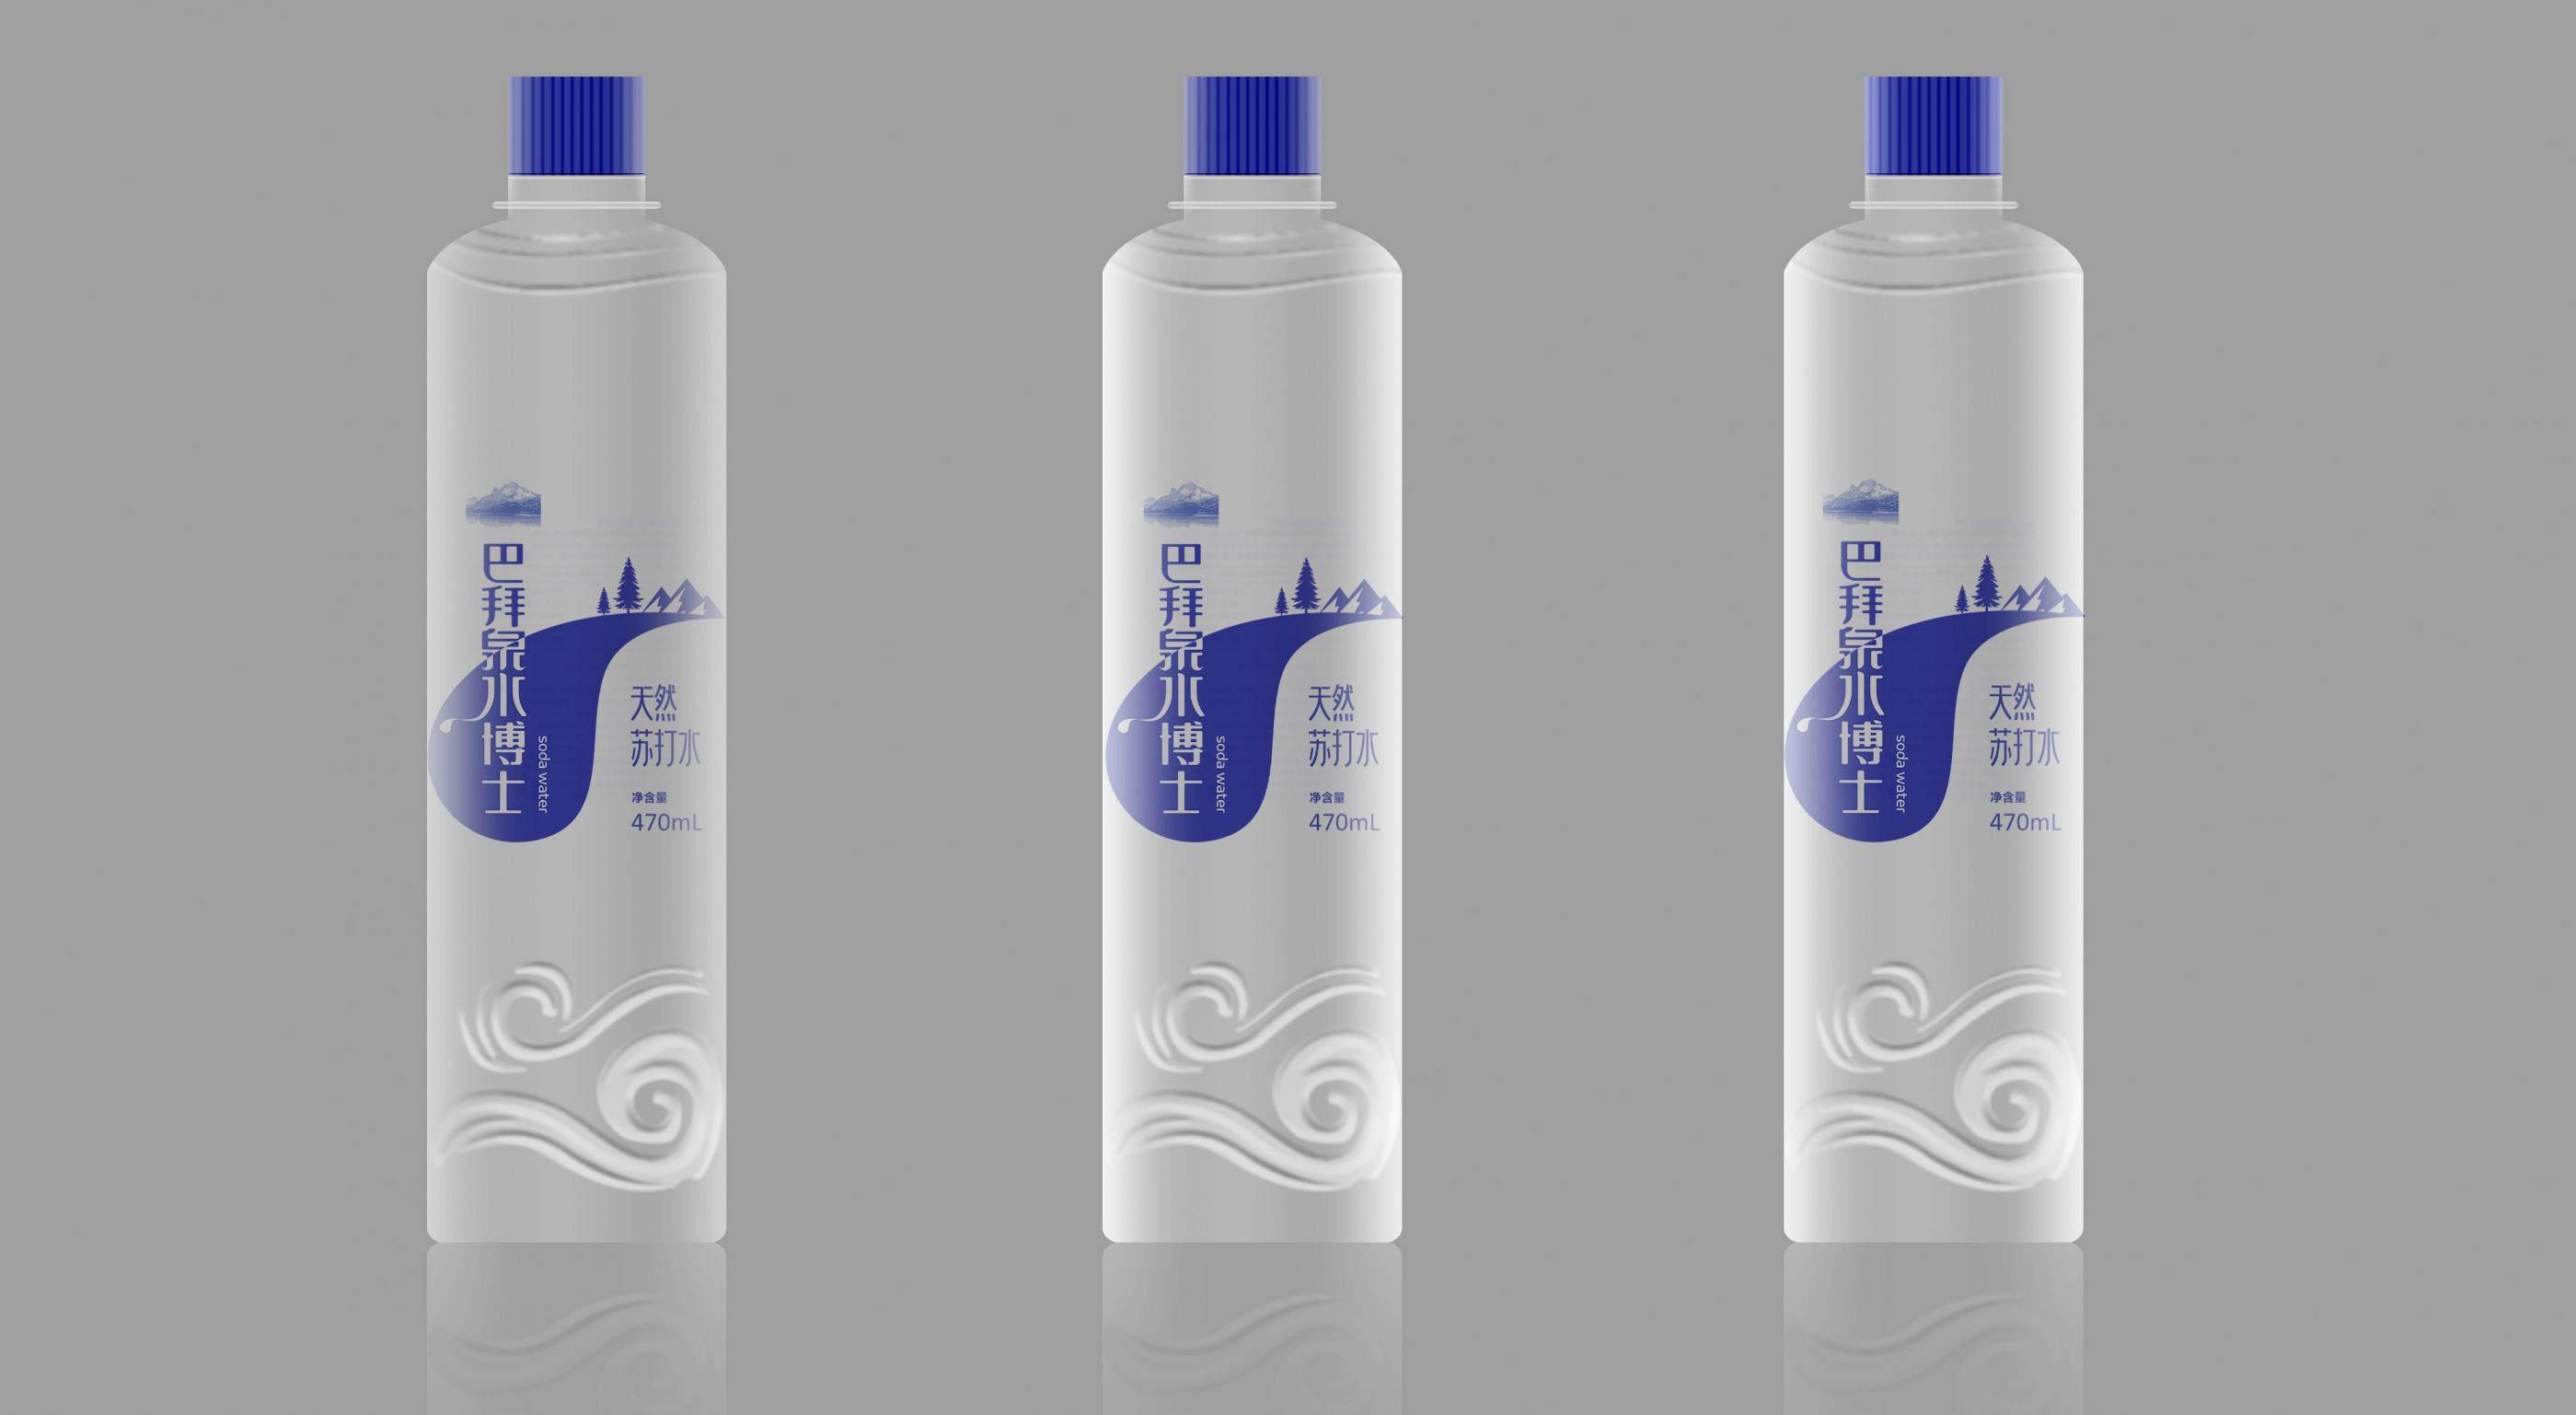 天然苏打水包装设计 飞特网 会员原创饮品包装设计